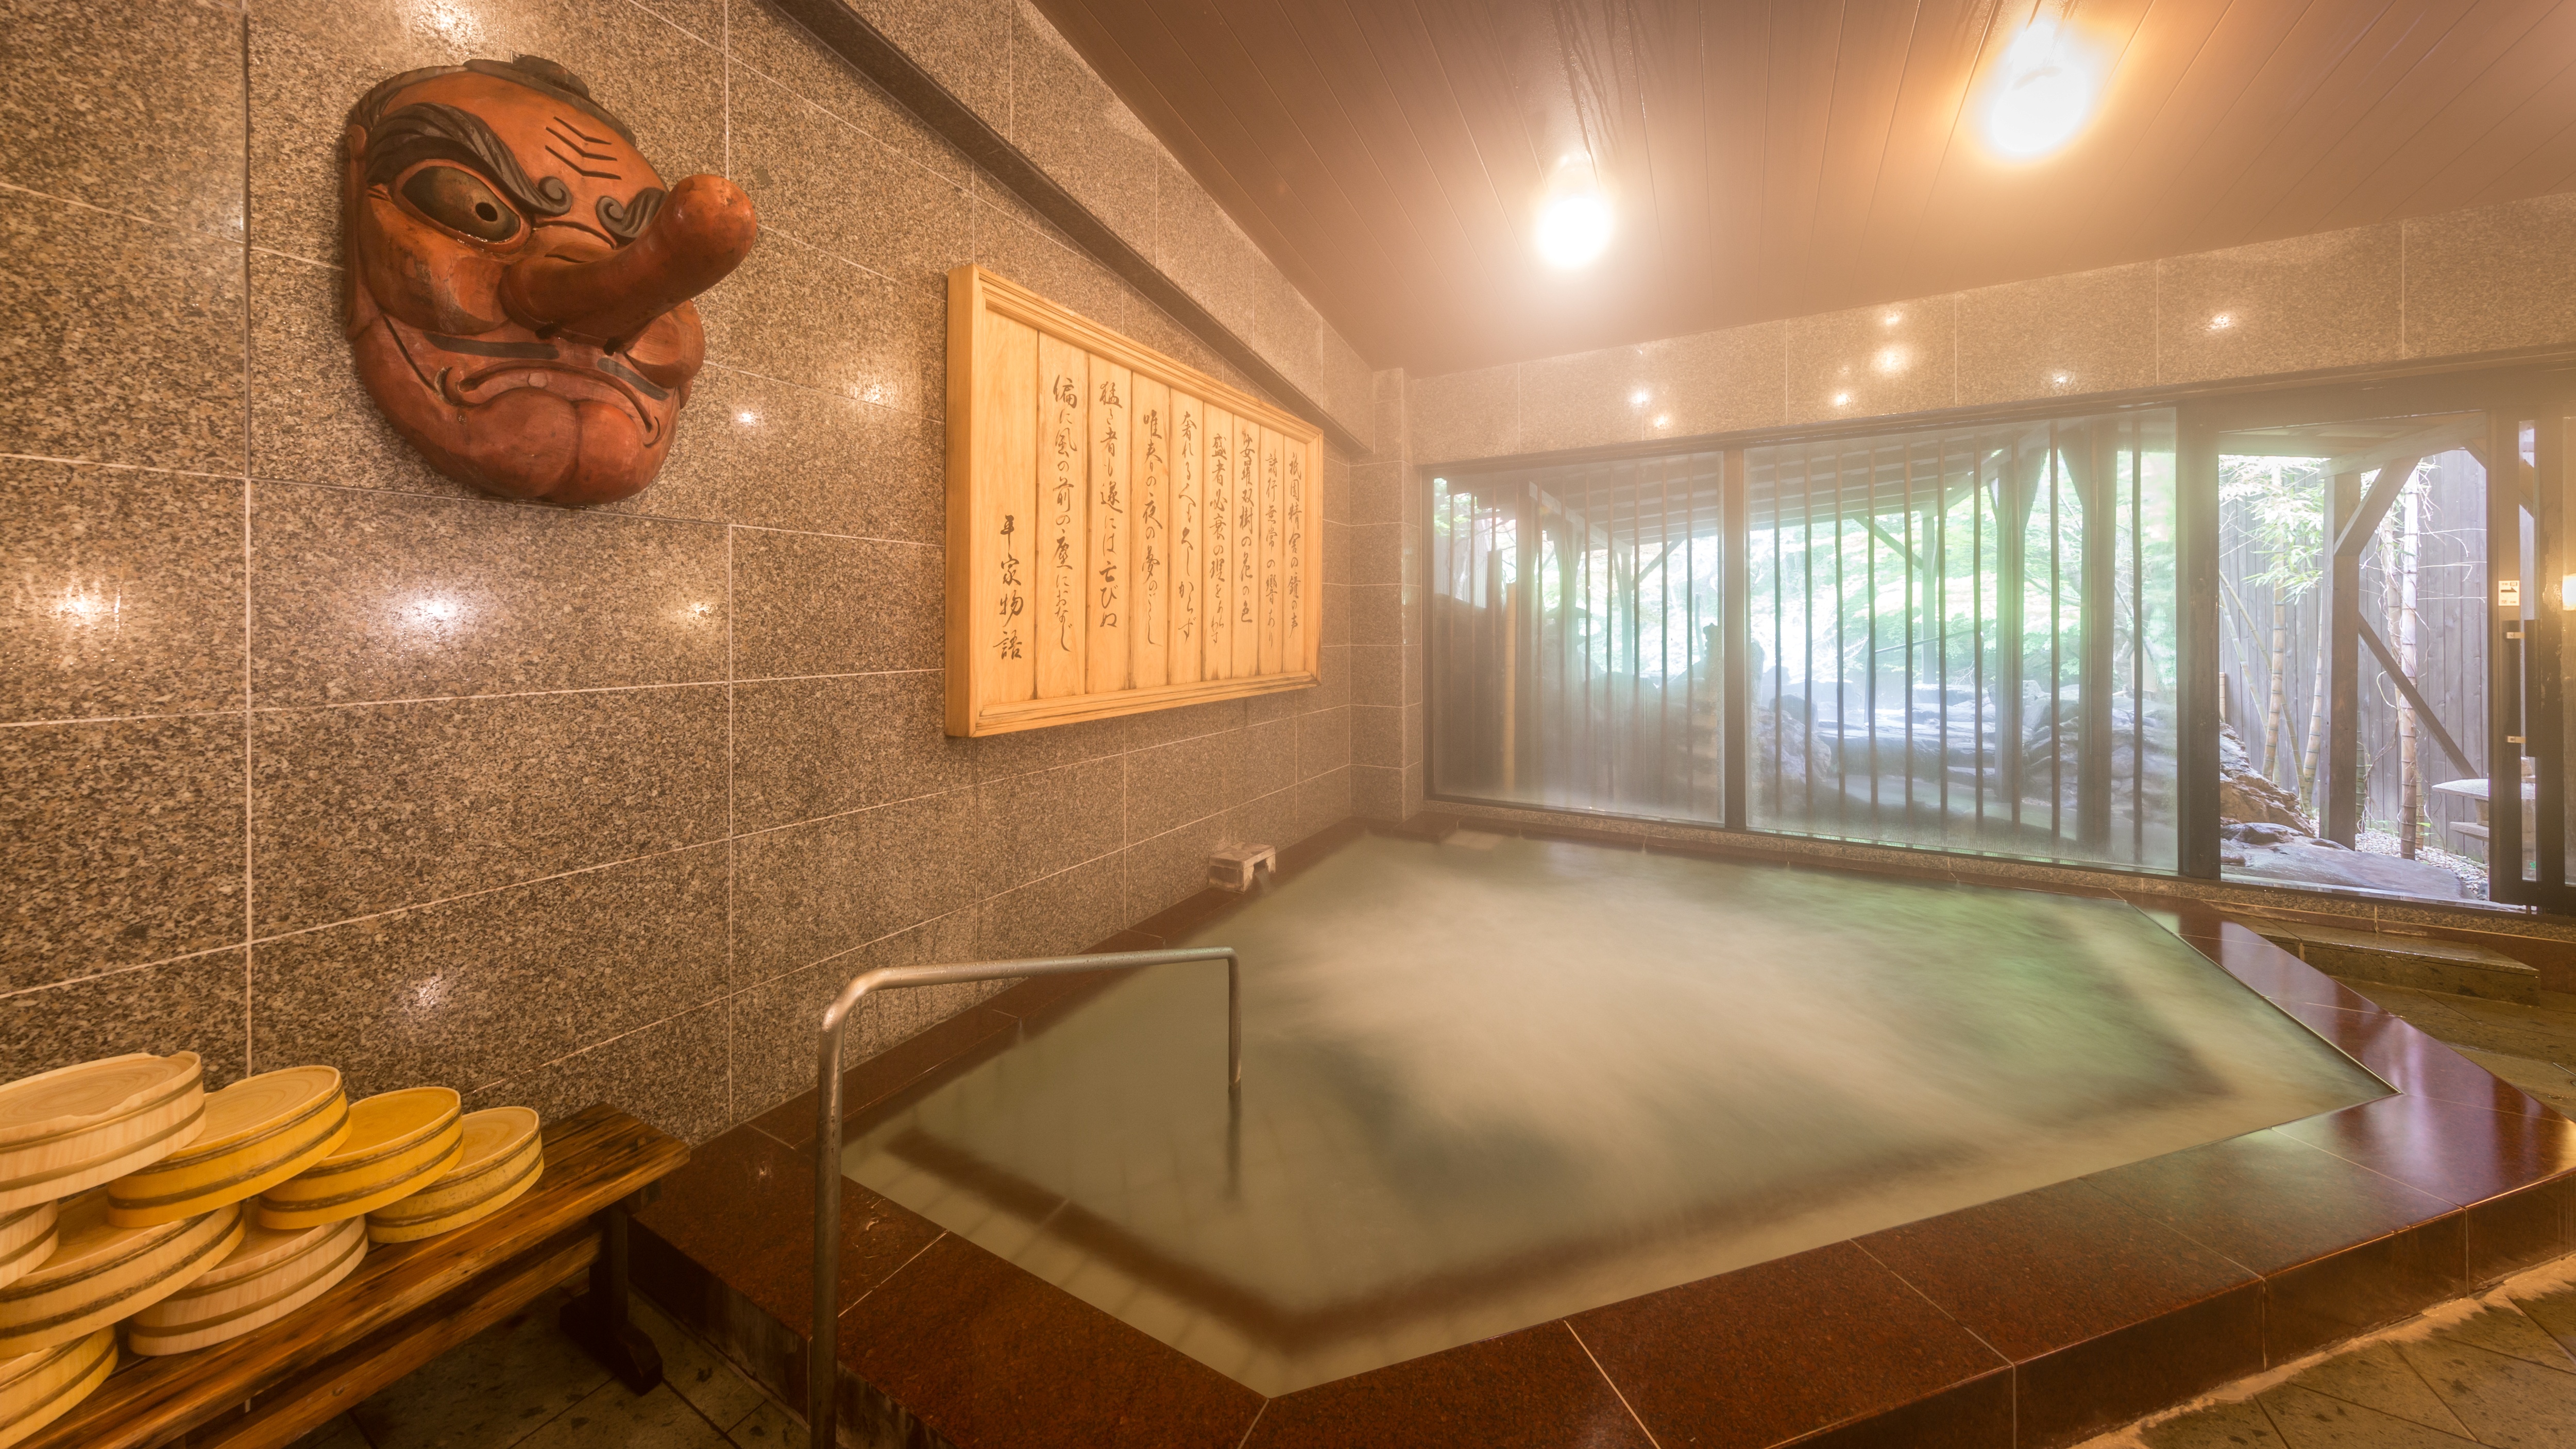 湯西川温泉は湯殿大権現と天狗が湯の守り神との伝承があります。。。“古民家風”殿方大浴場『御所の湯』